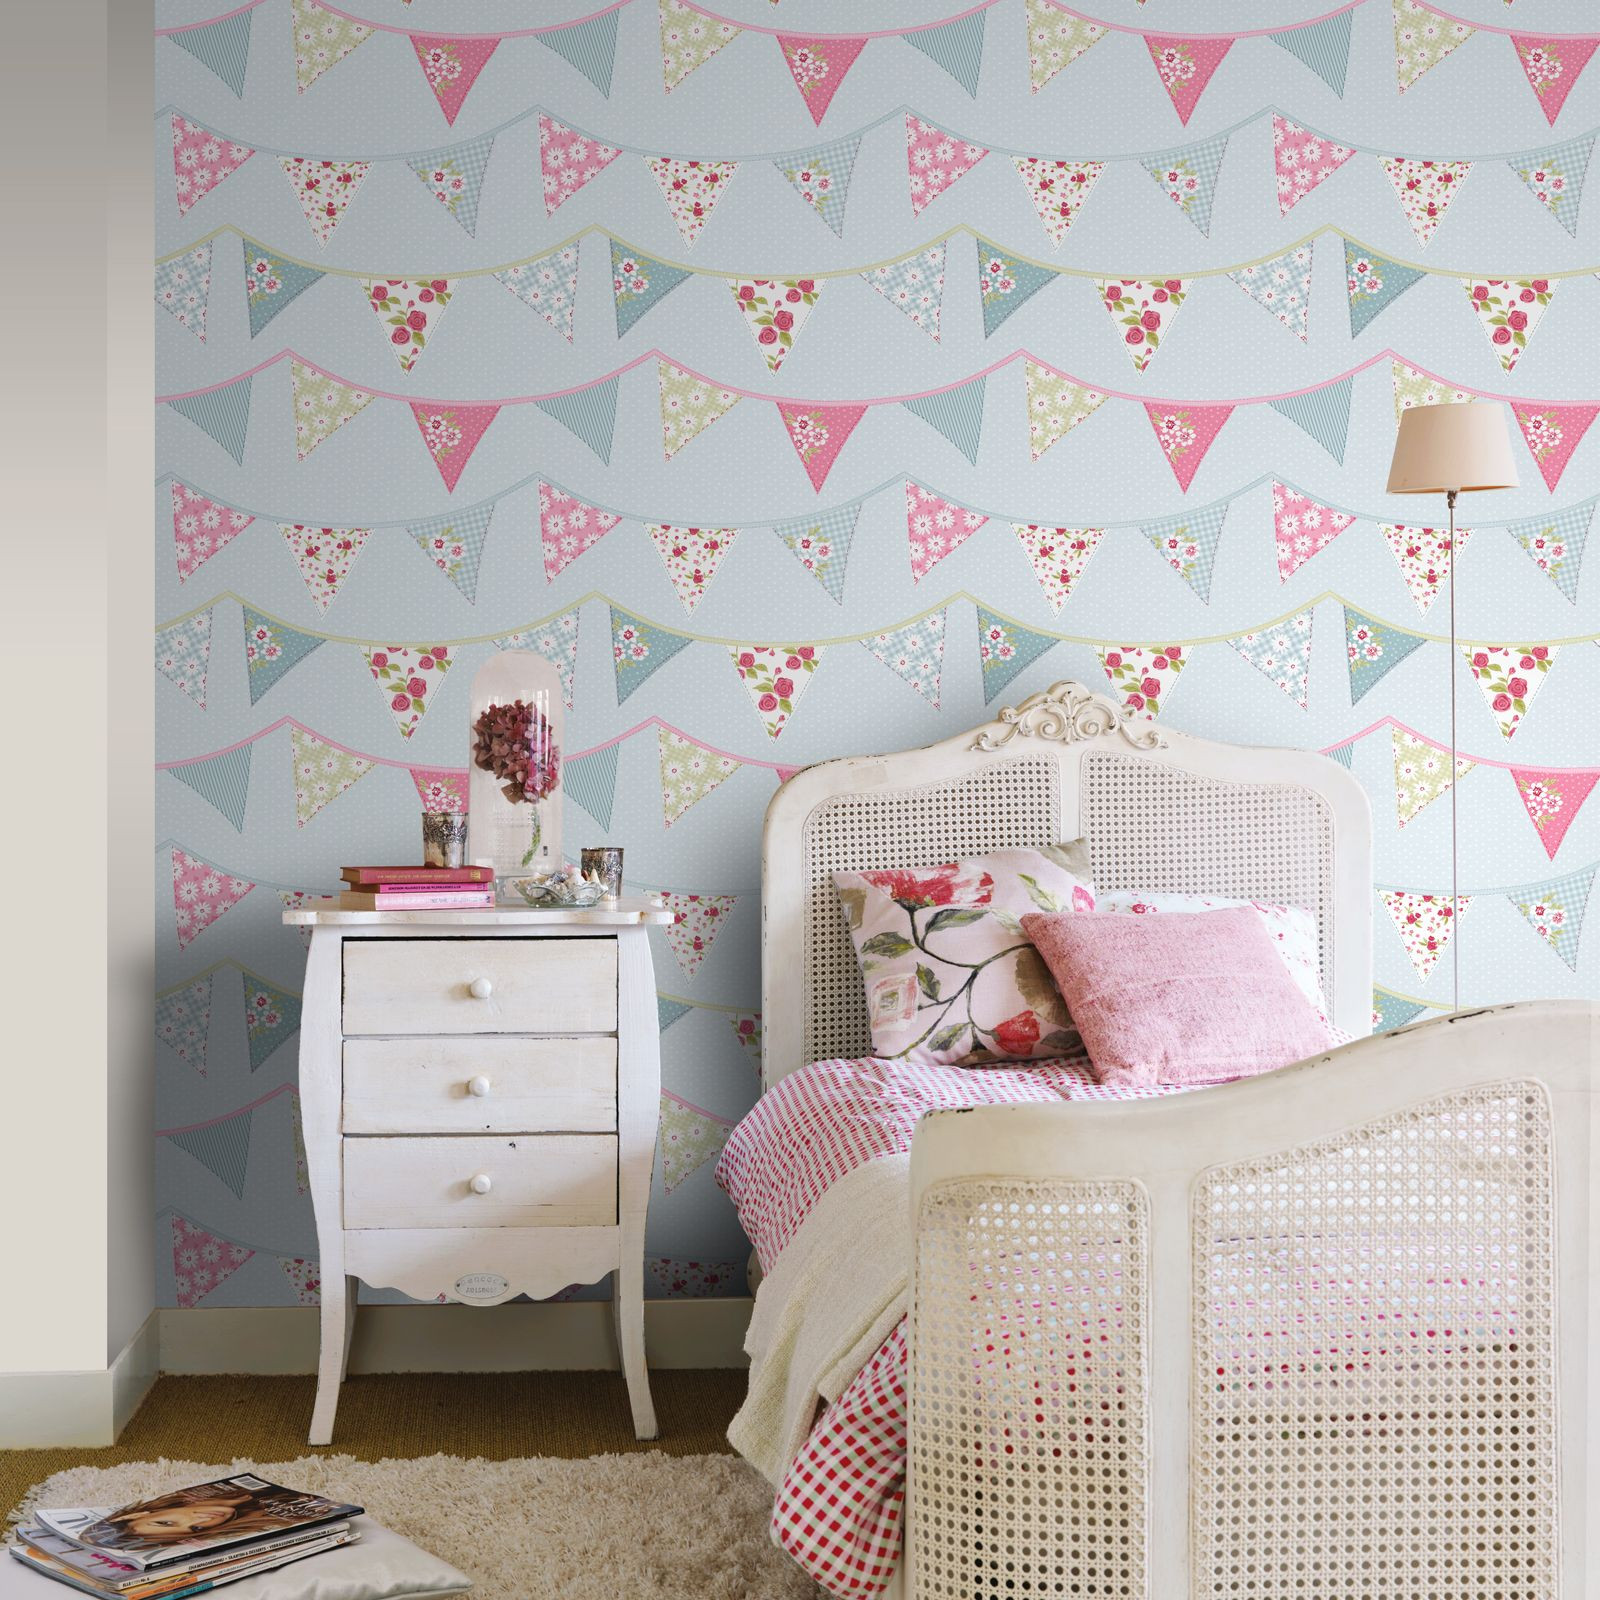 Wallpapers For Girls Bedroom
 GIRLS WALLPAPER THEMED BEDROOM UNICORN STARS HEART GLITTER